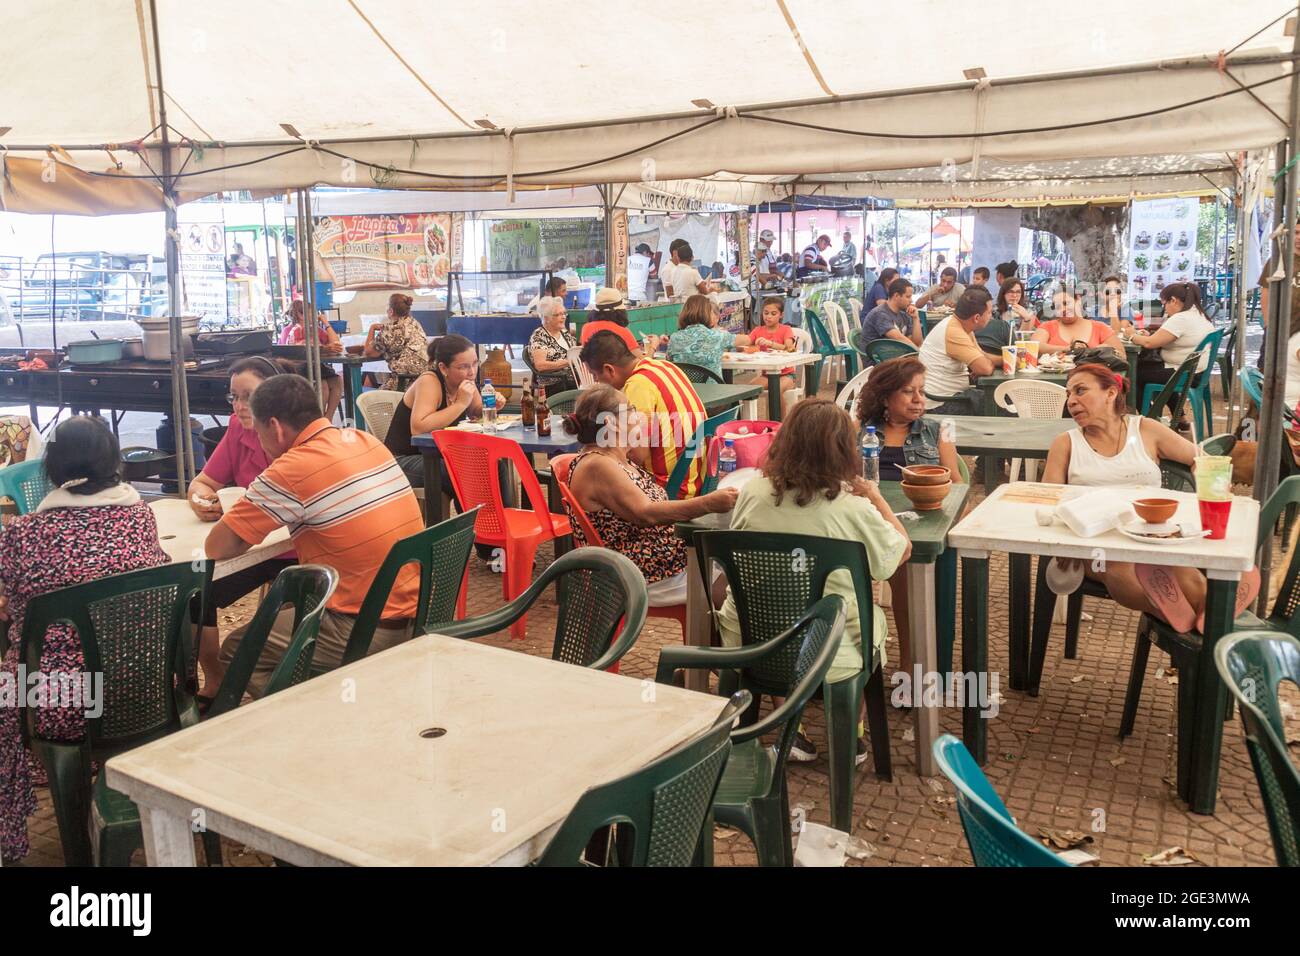 CONCEPCION DE ATACO, EL SALVADOR - 3 AVRIL 2016: Les gens mangent dans la cour de nourriture du week-end sur la place principale du village de Concepcion de Ataco. Banque D'Images